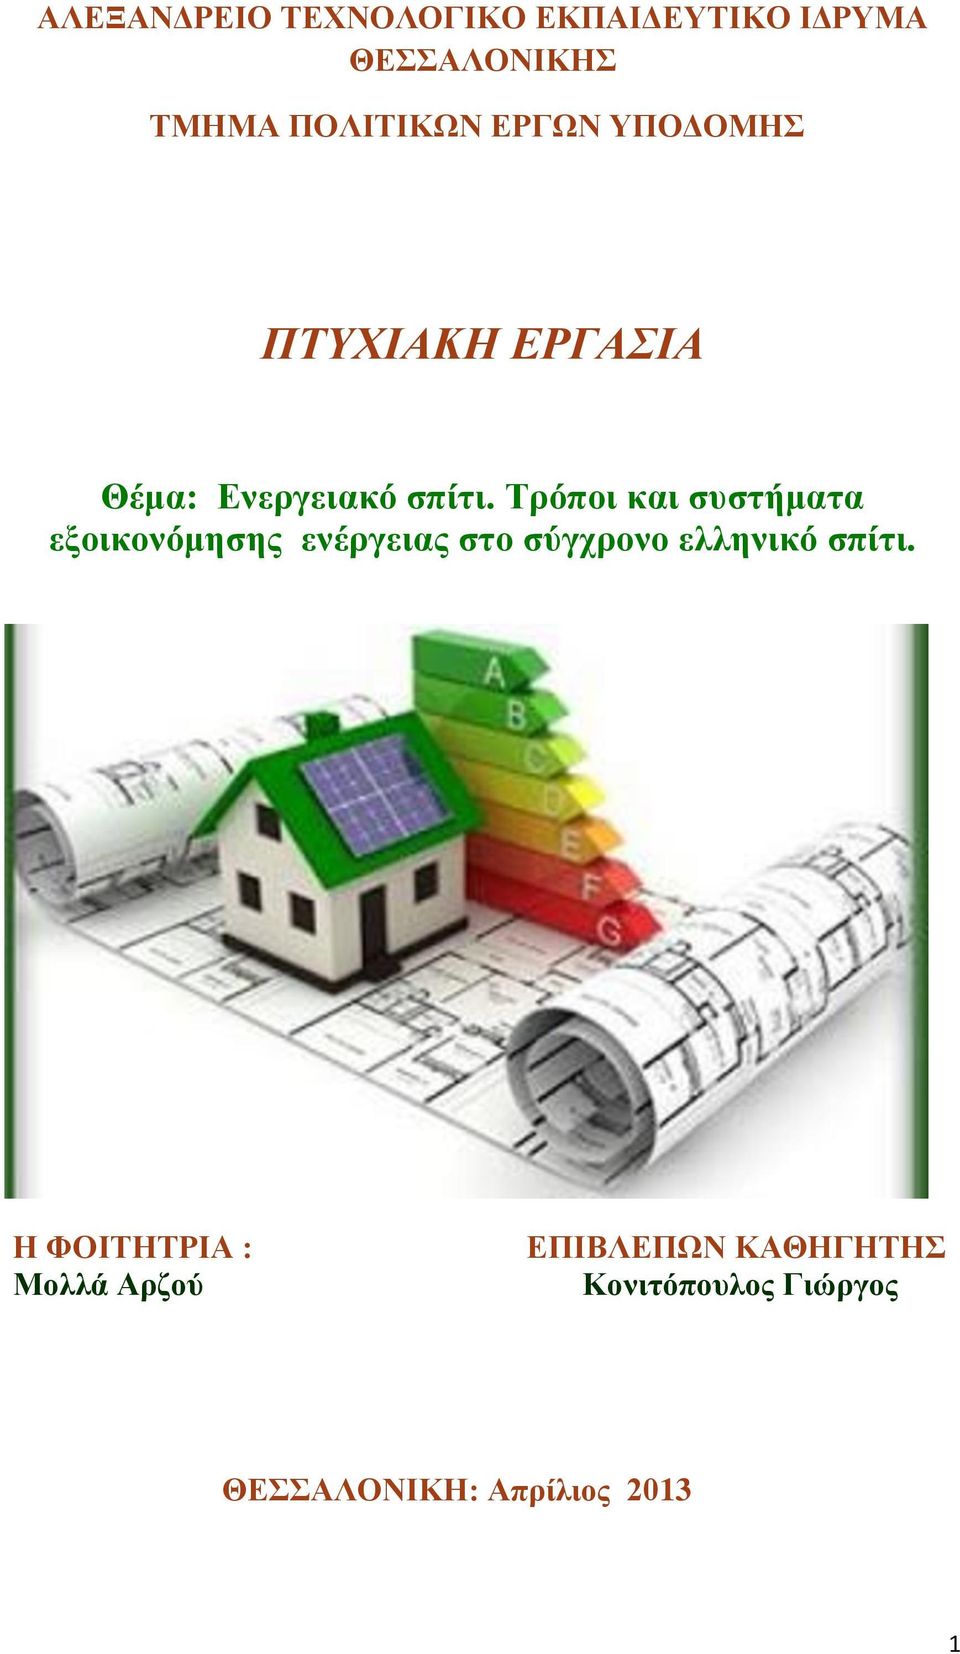 Τρόποι και συστήματα εξοικονόμησης ενέργειας στο σύγχρονο ελληνικό σπίτι.